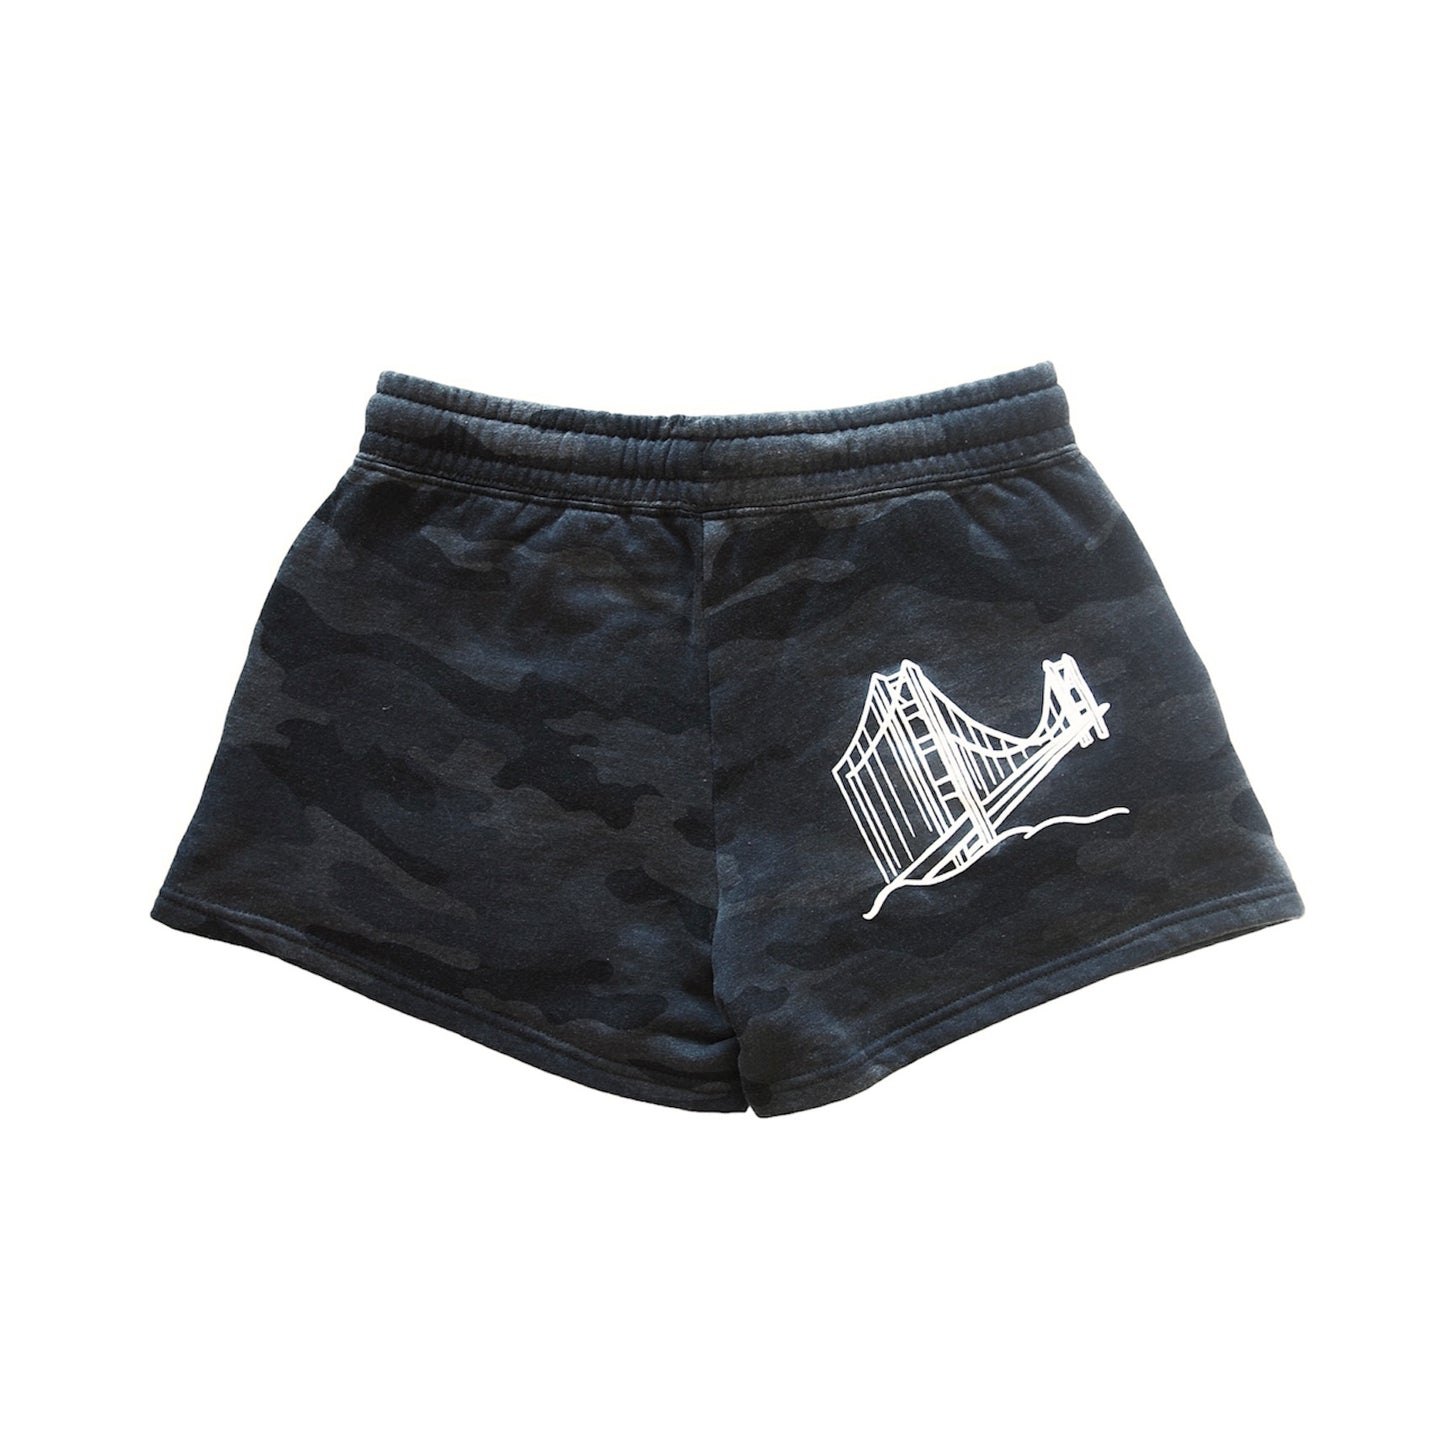 Black Camo “Bay Area Girls” Fleece Shorts